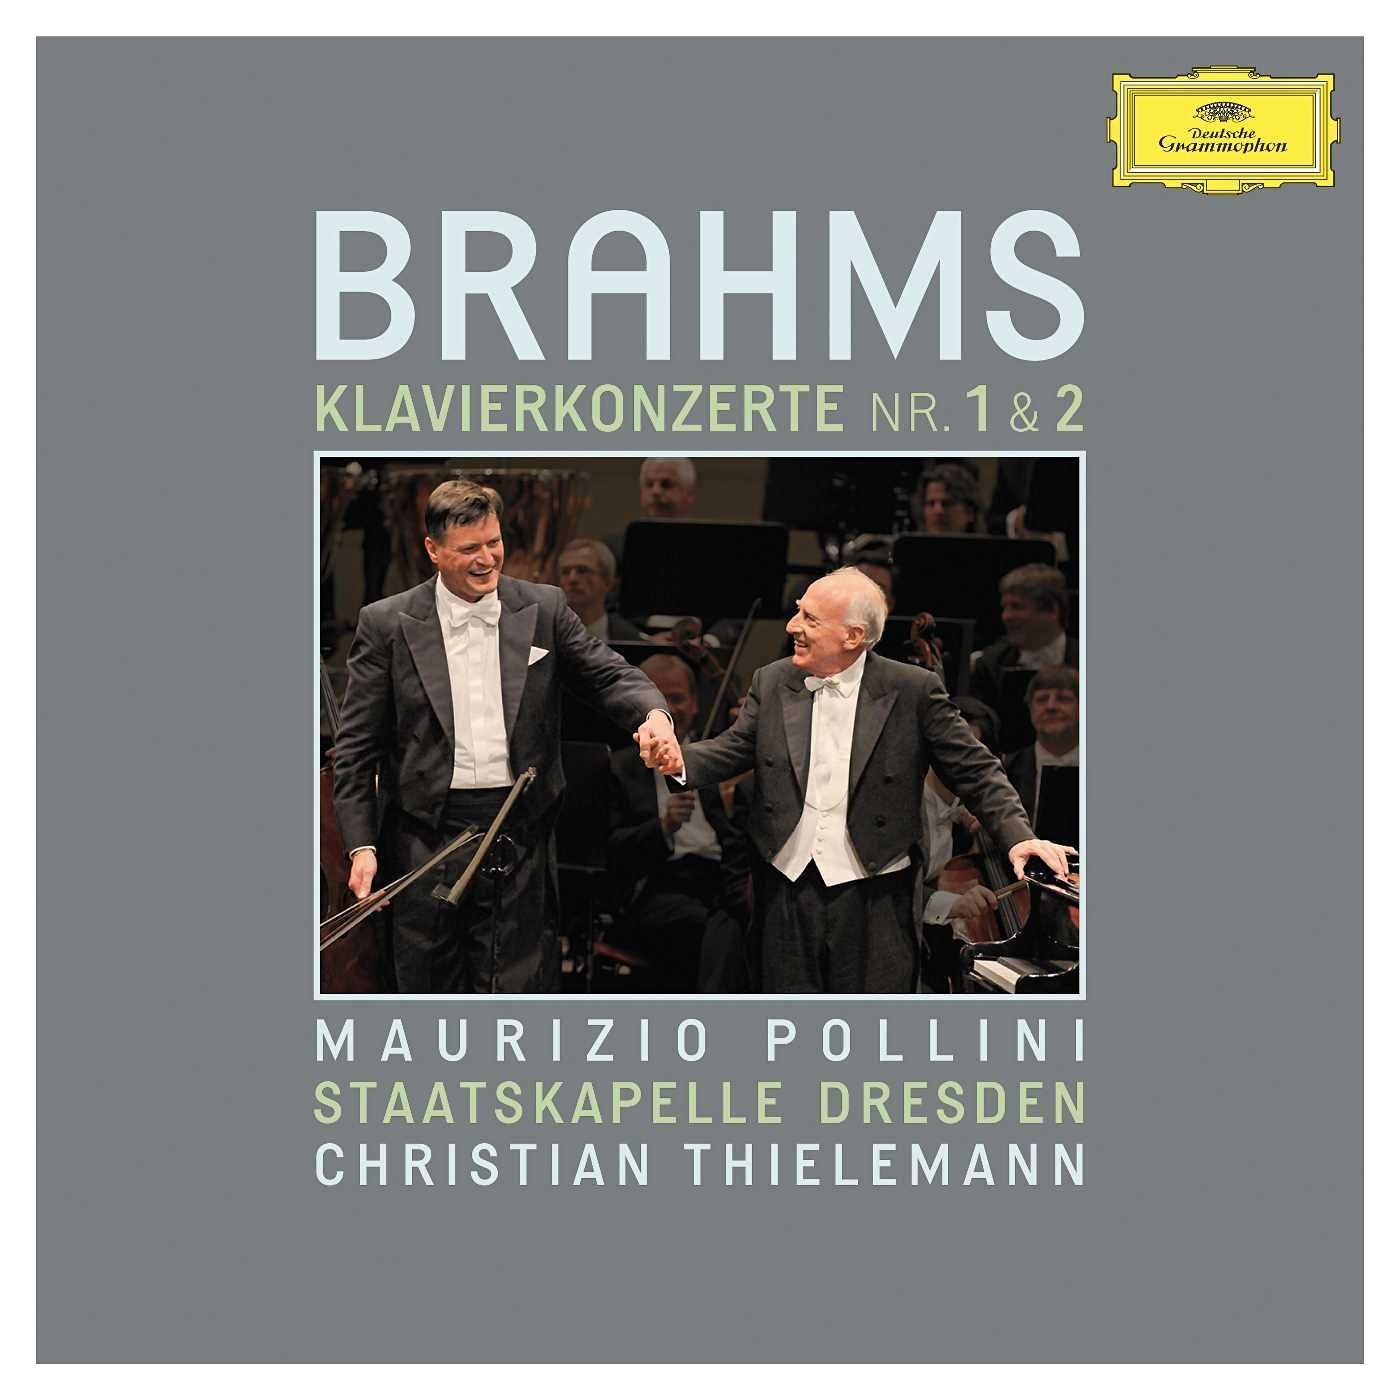 Brahms - Piano Concertos Nos. 1 & 2 | Maurizio Pollini, Staatskapelle Dresden, Christian Thielemann